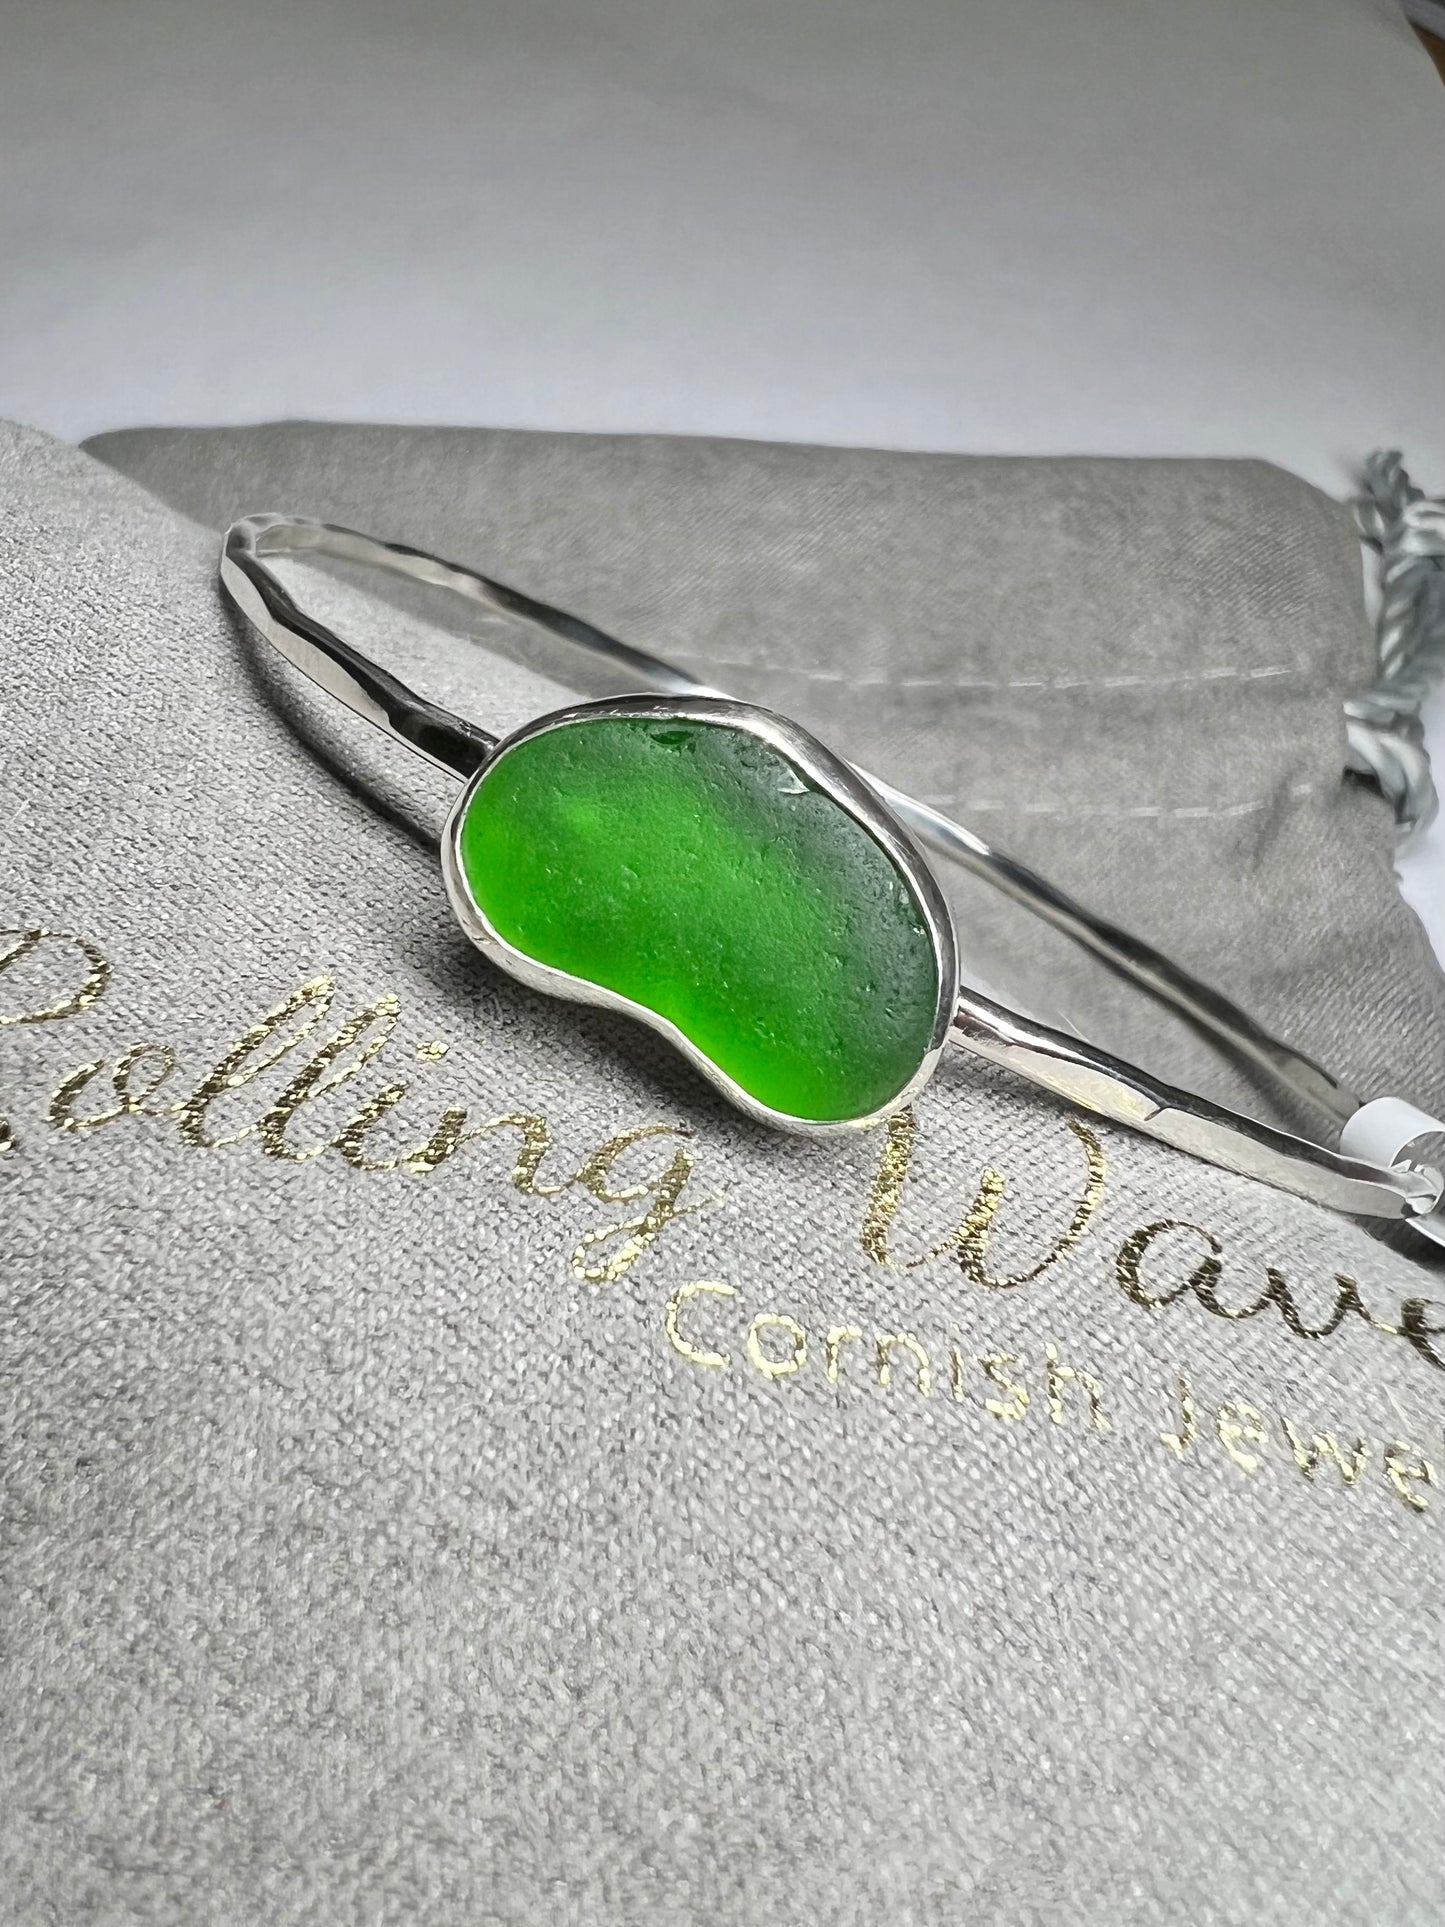 Green Cornish seaglass bangle